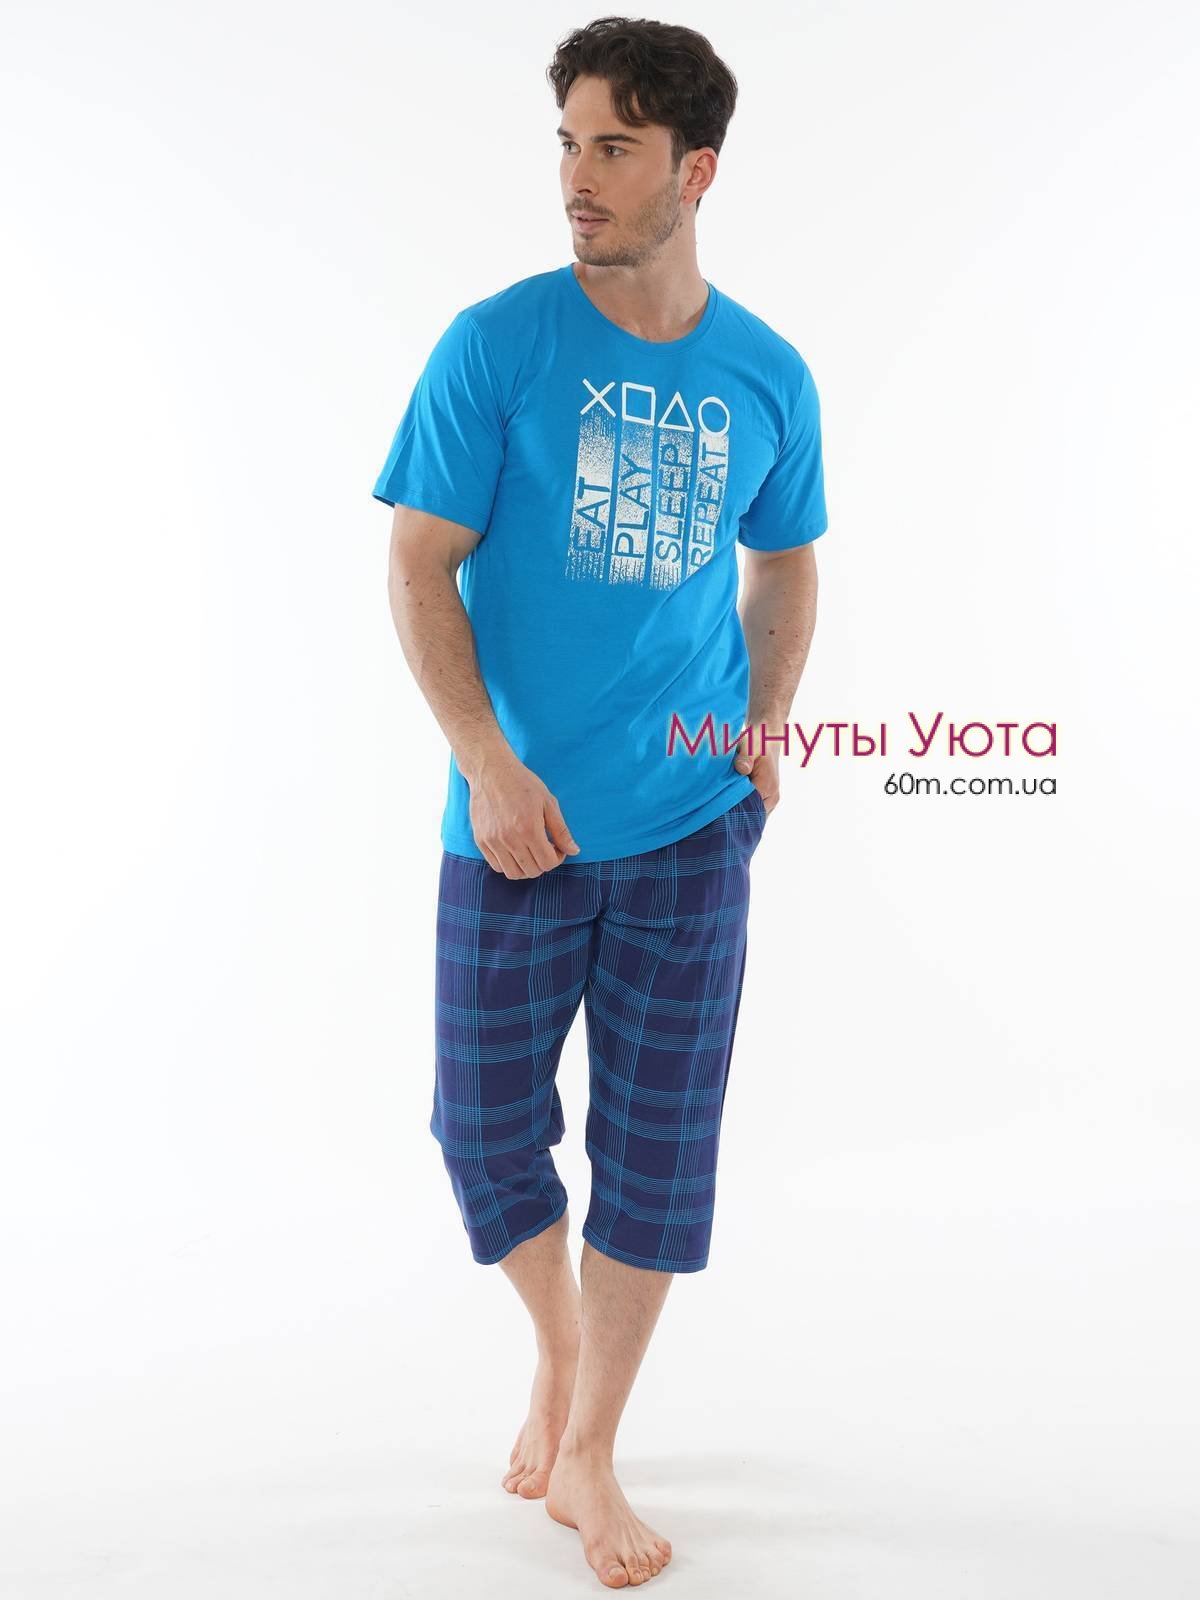 Мужская пижама голубого цвета из натурального хлопка с бриджами 